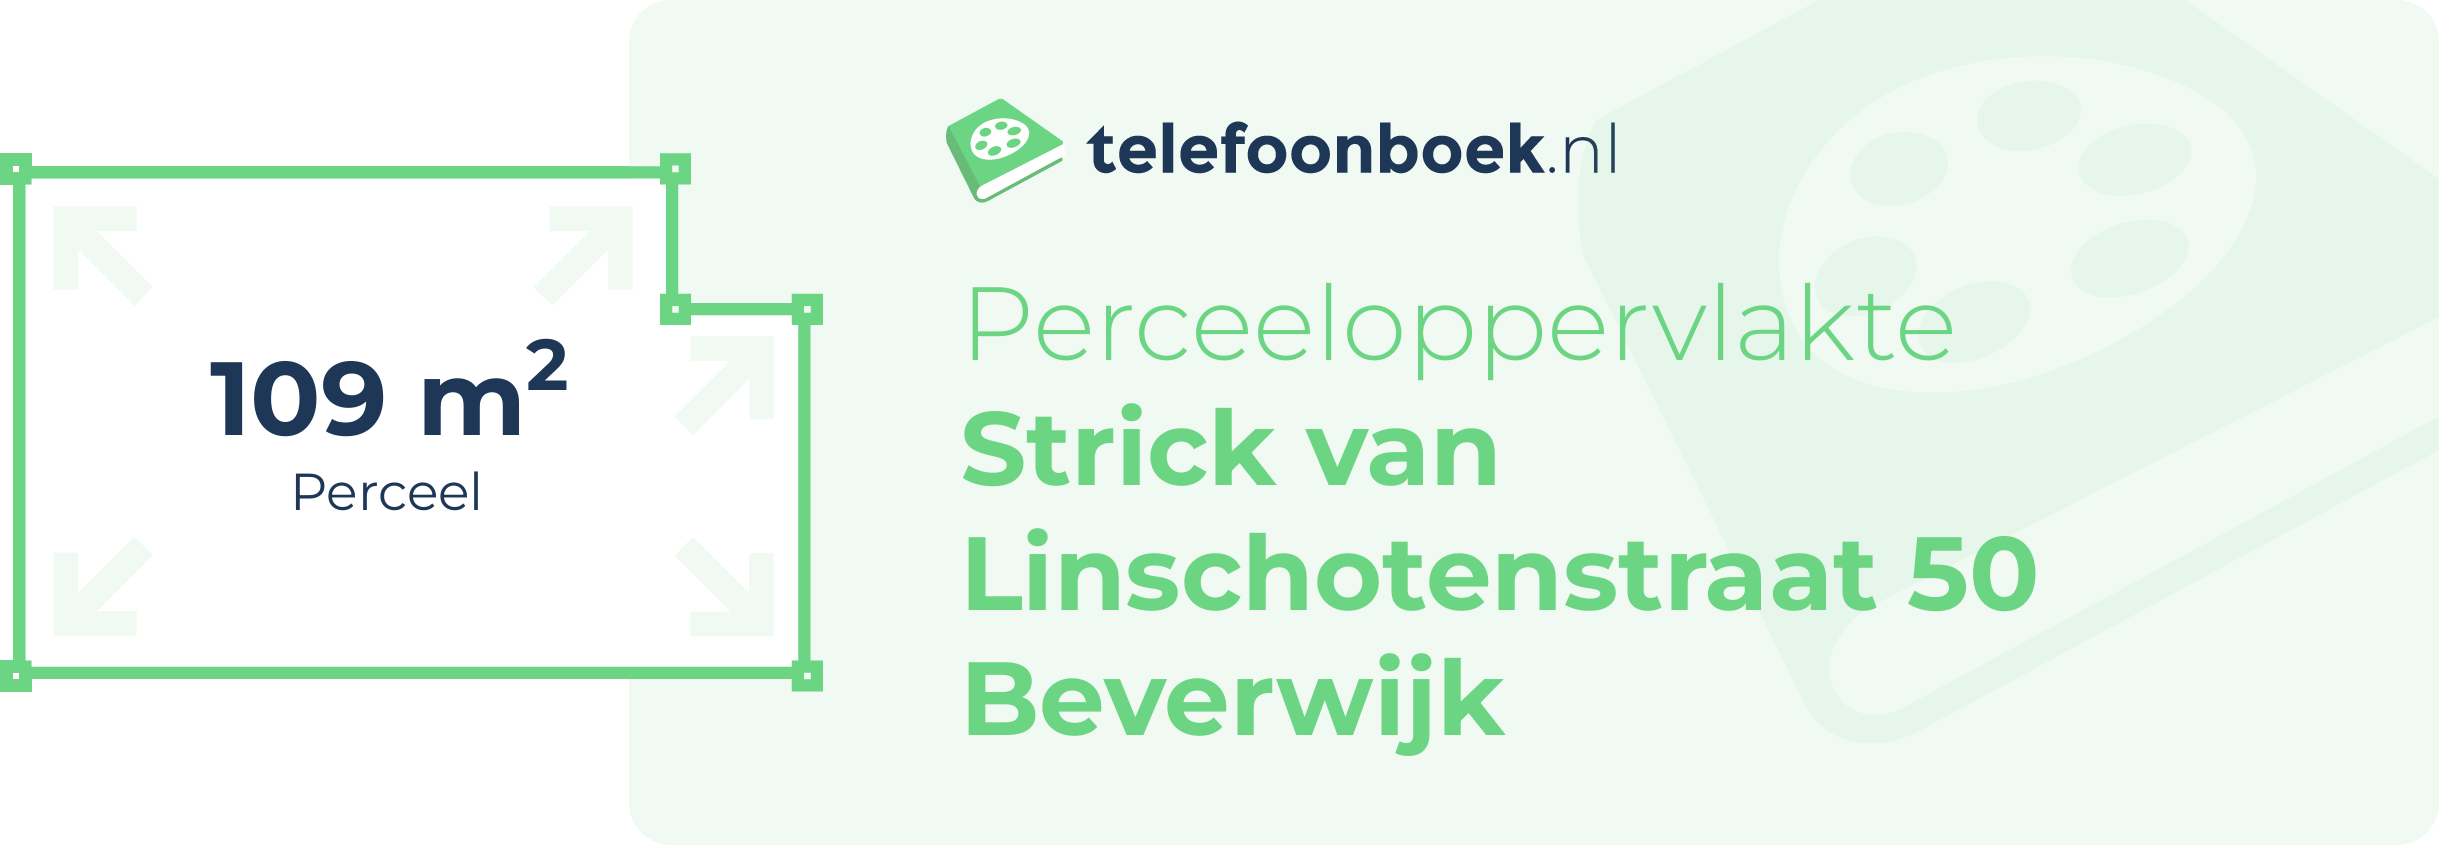 Perceeloppervlakte Strick Van Linschotenstraat 50 Beverwijk